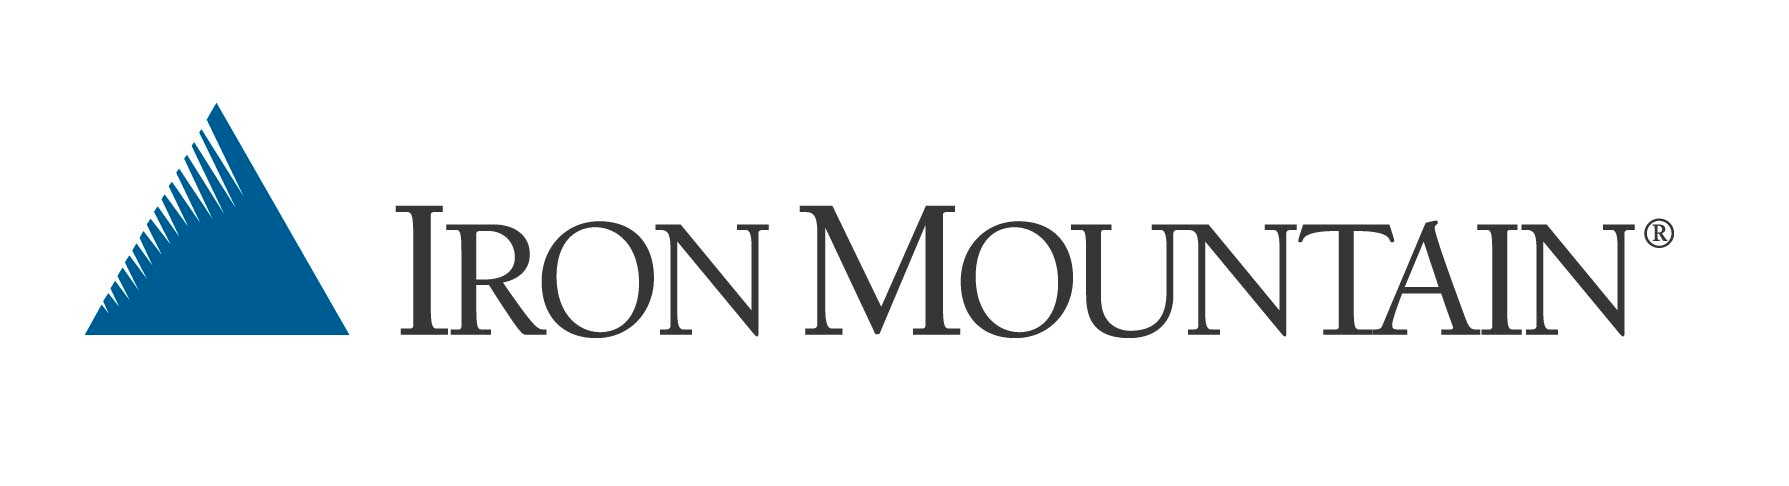 Iron Mountain Brand Logo